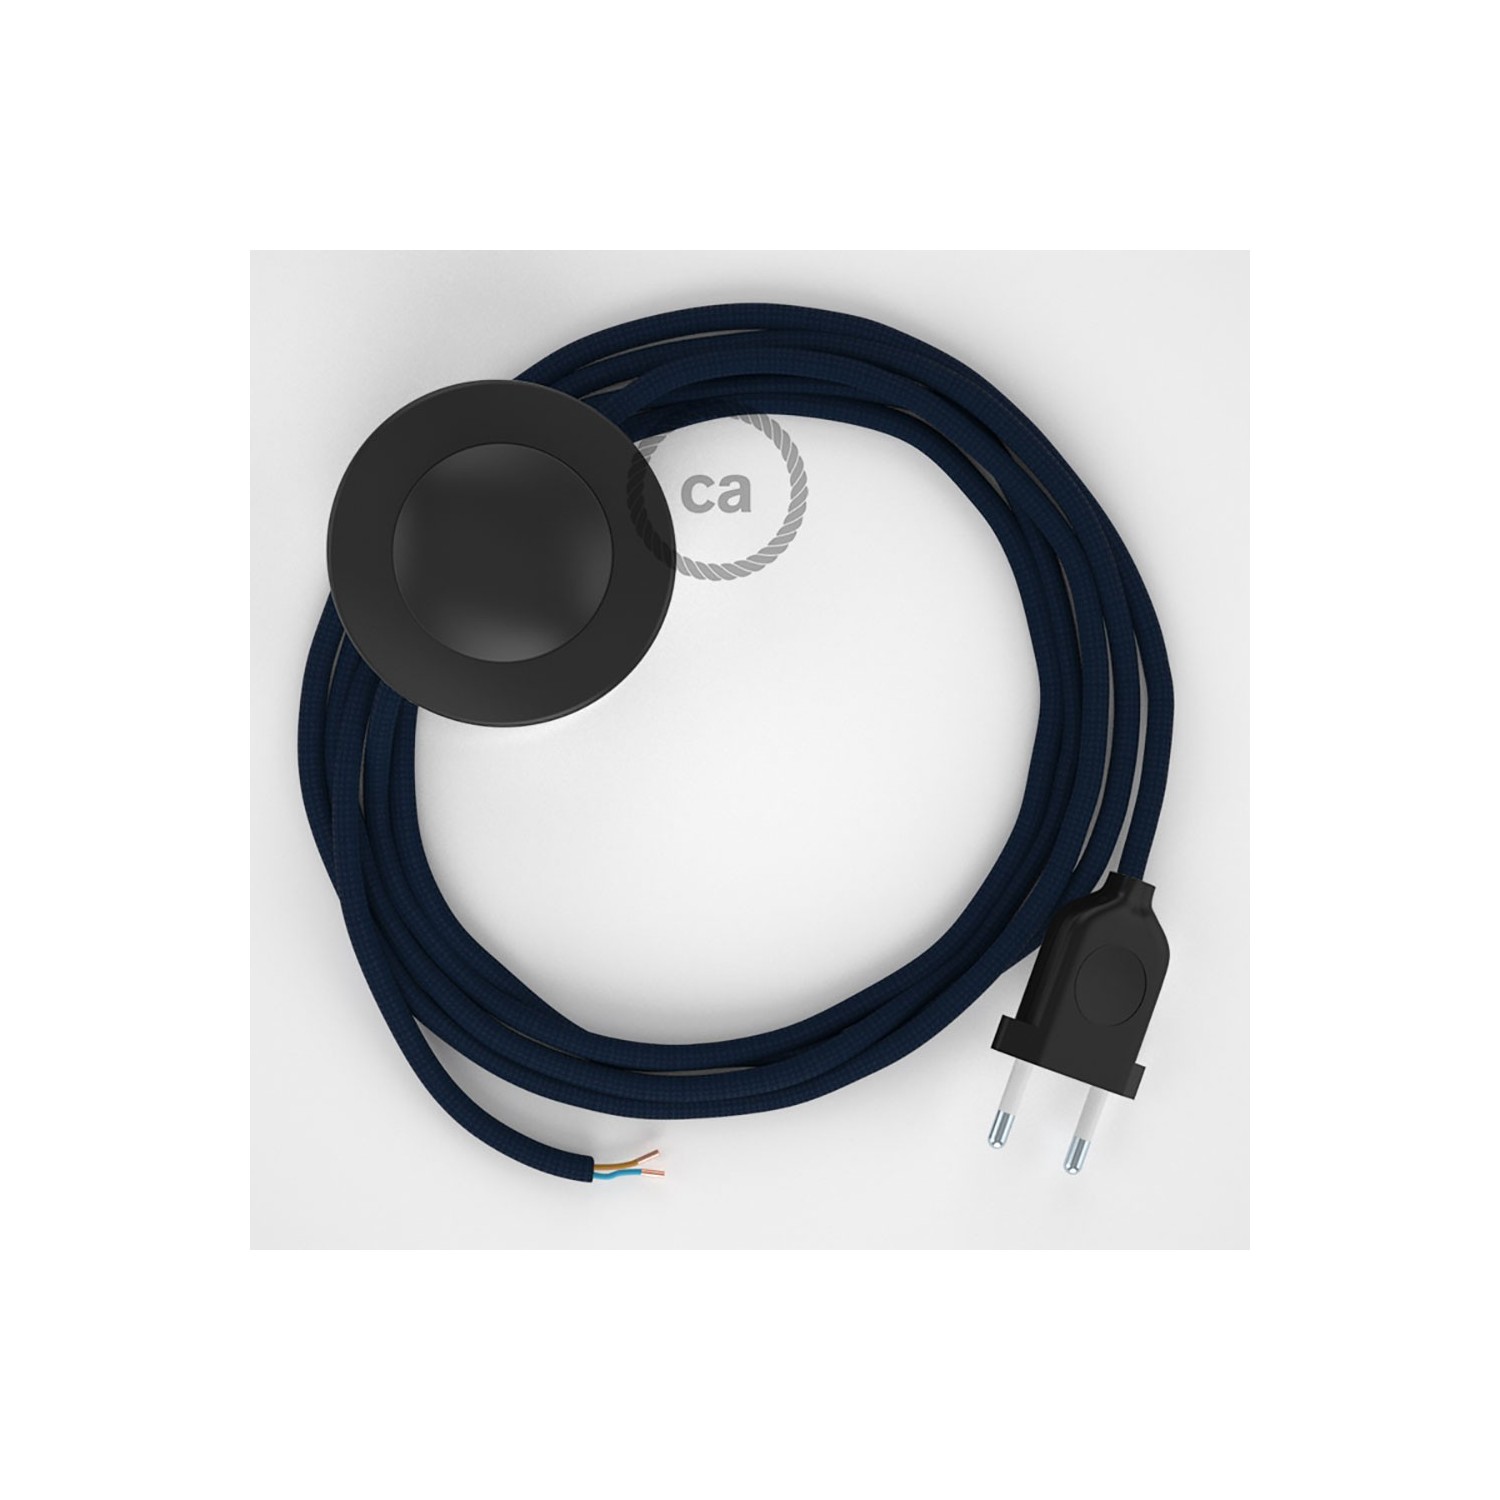 Cordon pour lampadaire, câble RM20 Effet Soie Bleu Foncé 3 m. Choisissez la couleur de la fiche et de l'interrupteur!